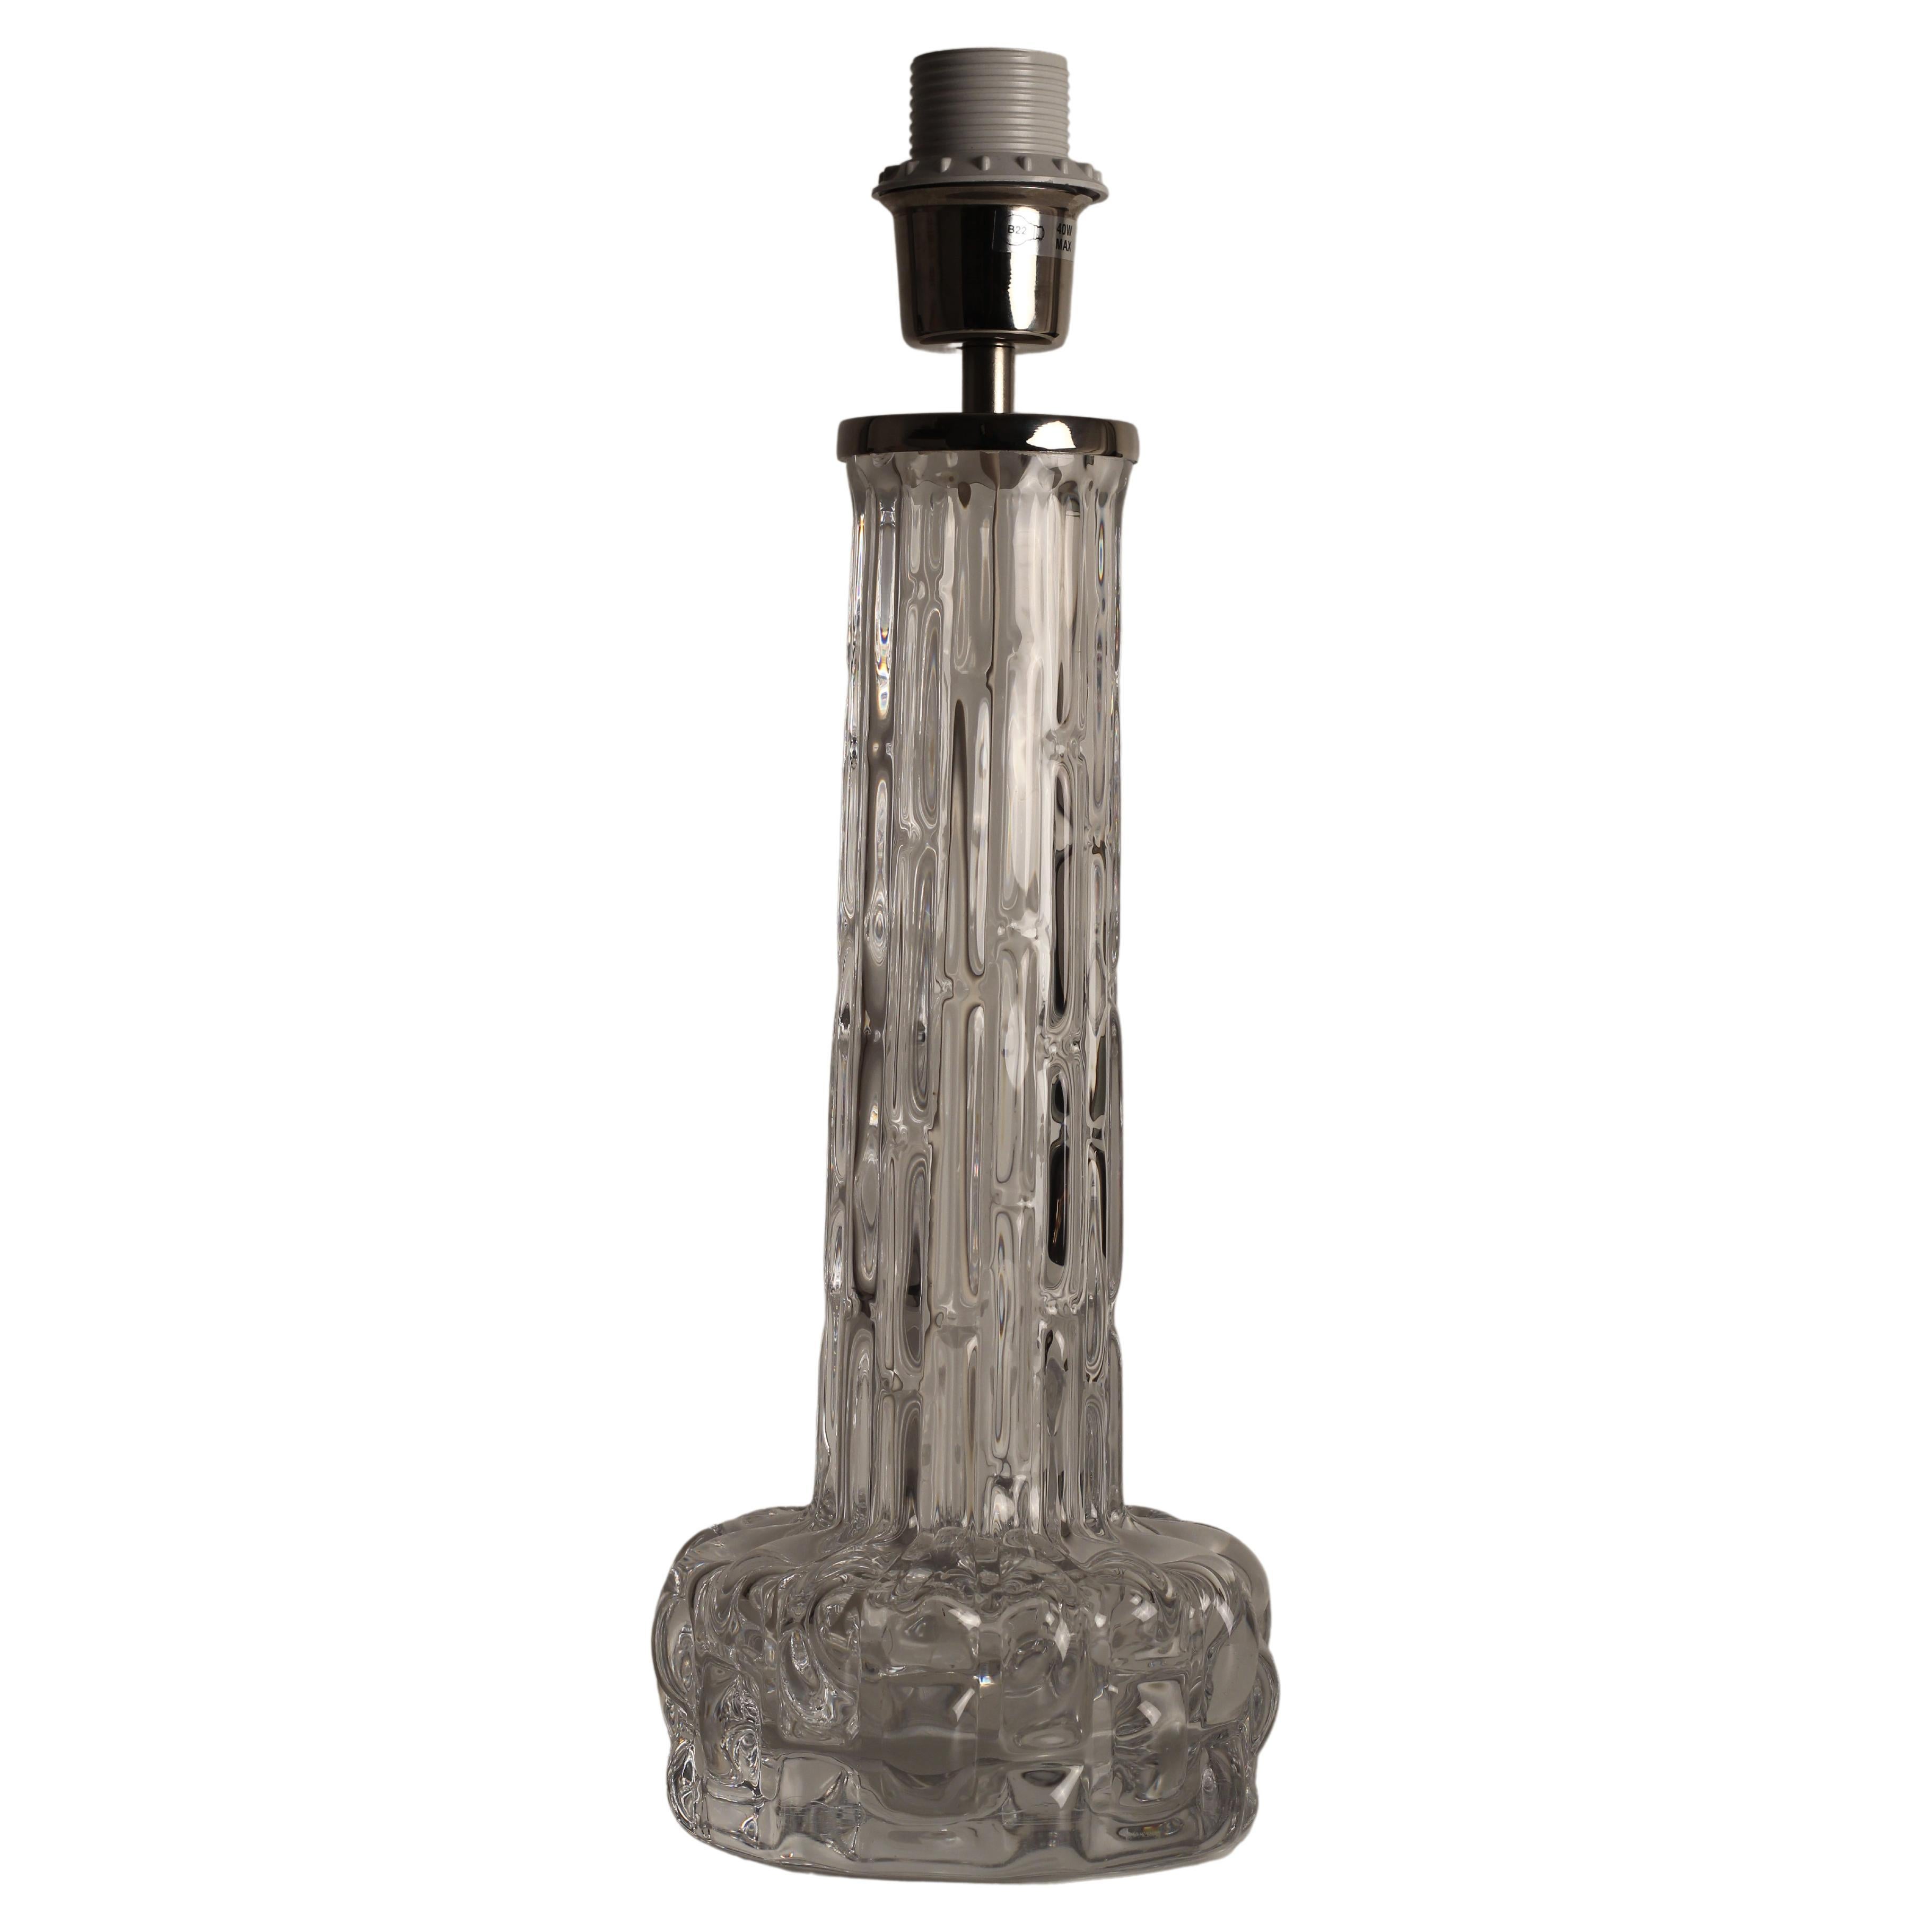 Une belle lampe de table en verre de cristal avec le nom de modèle RD par Carl Fagerlund pour Orrefors, Suède. La base est en verre de cristal et rappelle l'eau gelée, avec une surface ondulée très intéressante. De taille monumentale, la simplicité